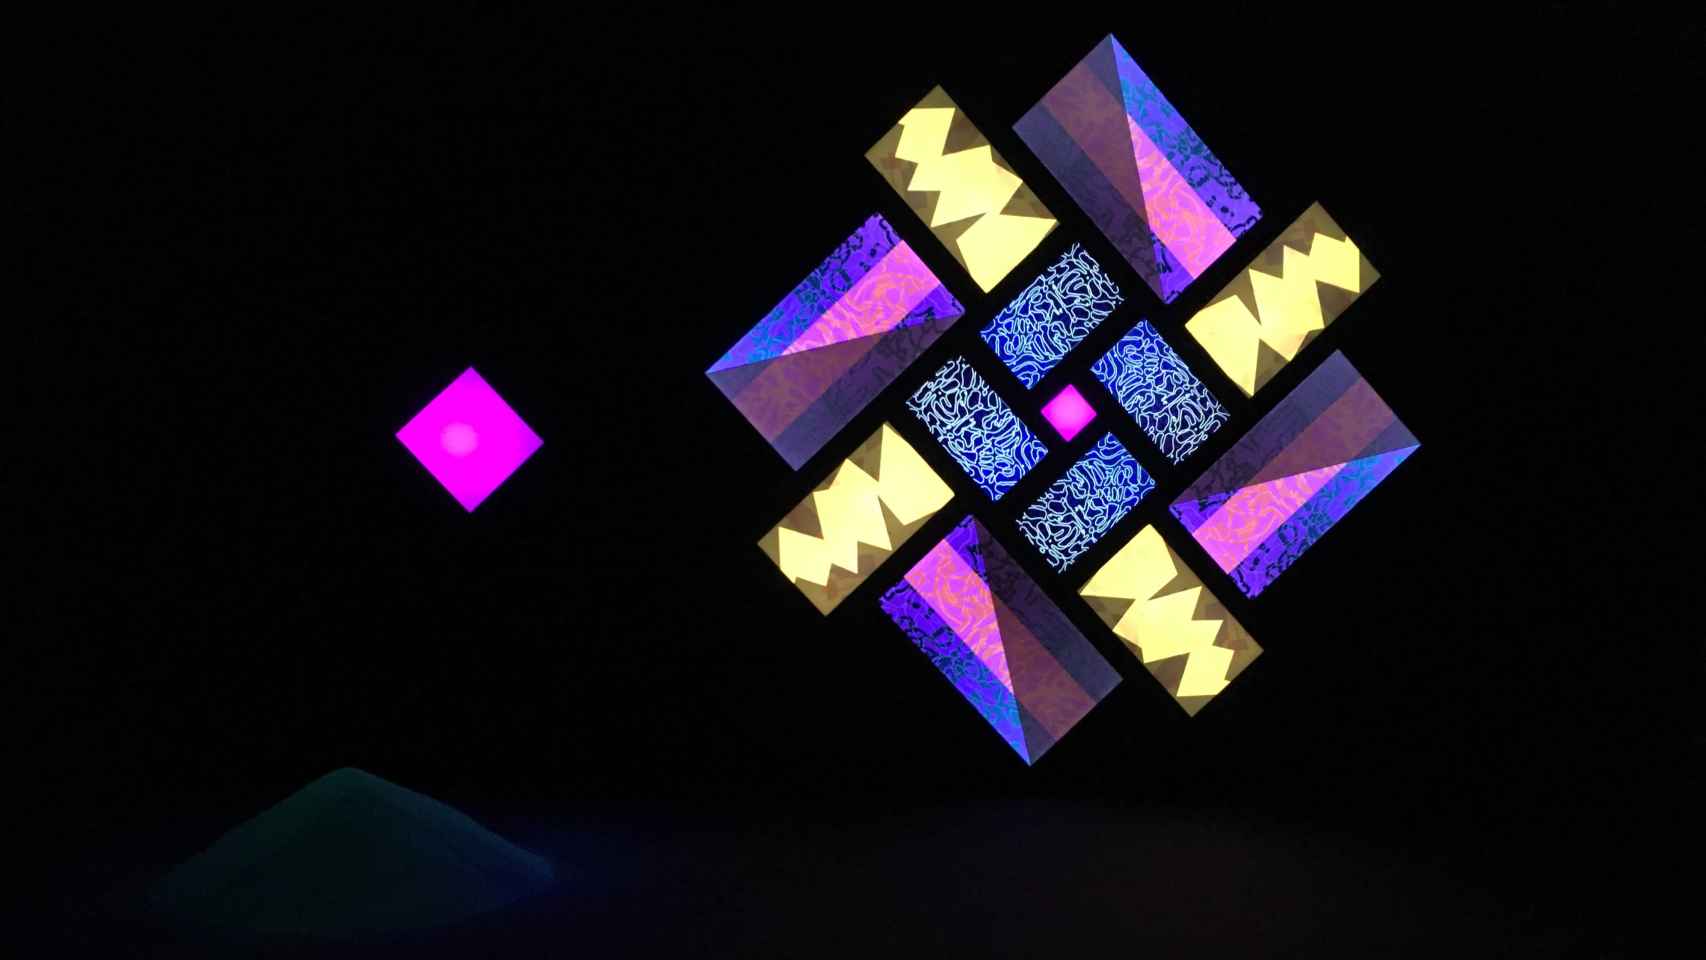 La exposición Brian Eno. Lightforms / Soundforms en el Arts Santa Mònica / A.V